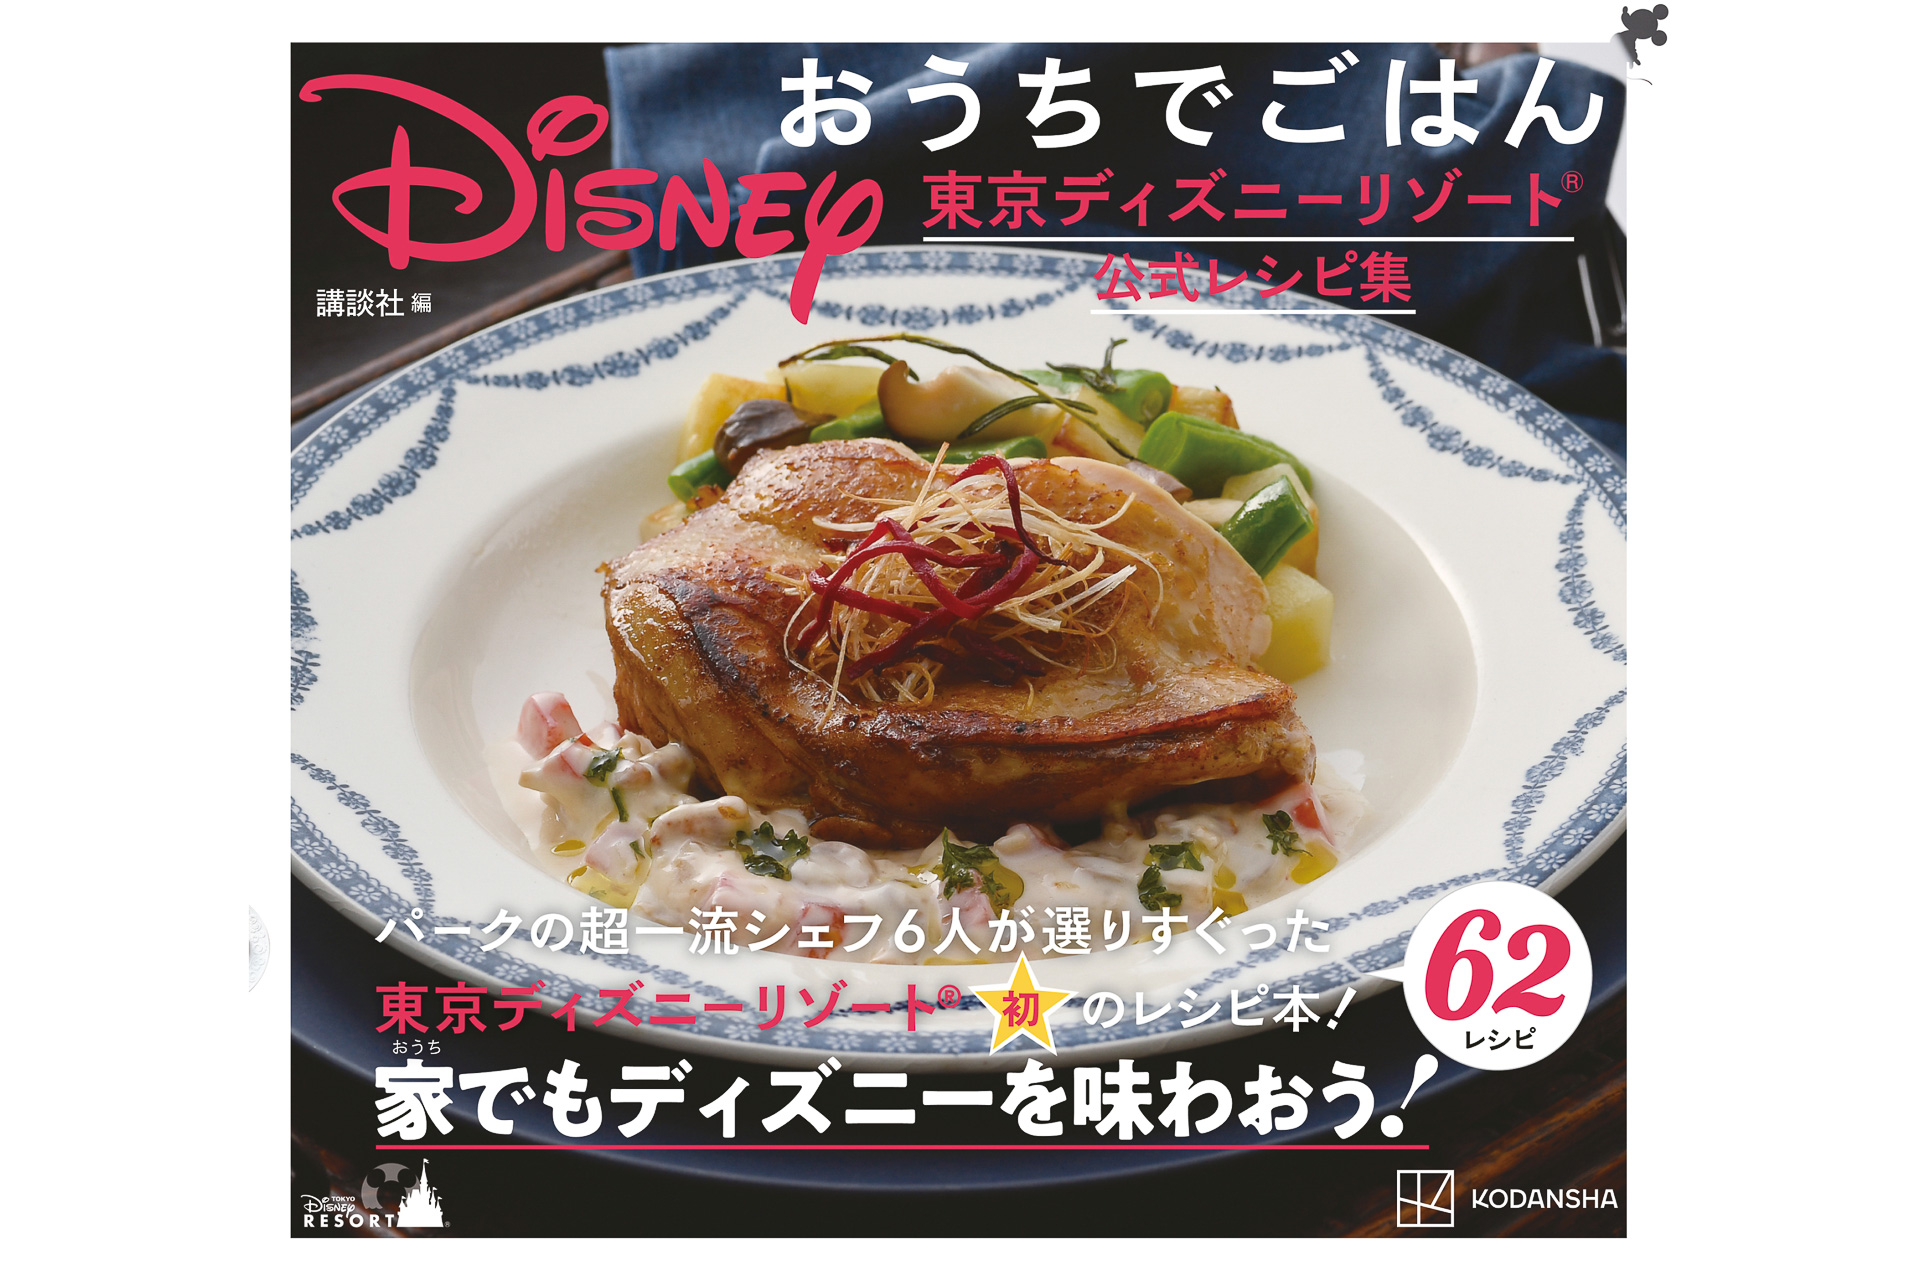 東京ディズニーランド開園初期のメニューも掲載 初のレシピ本 Disney おうちでごはん 東京ディズニーリゾート公式レシピ集 グルメ Watch